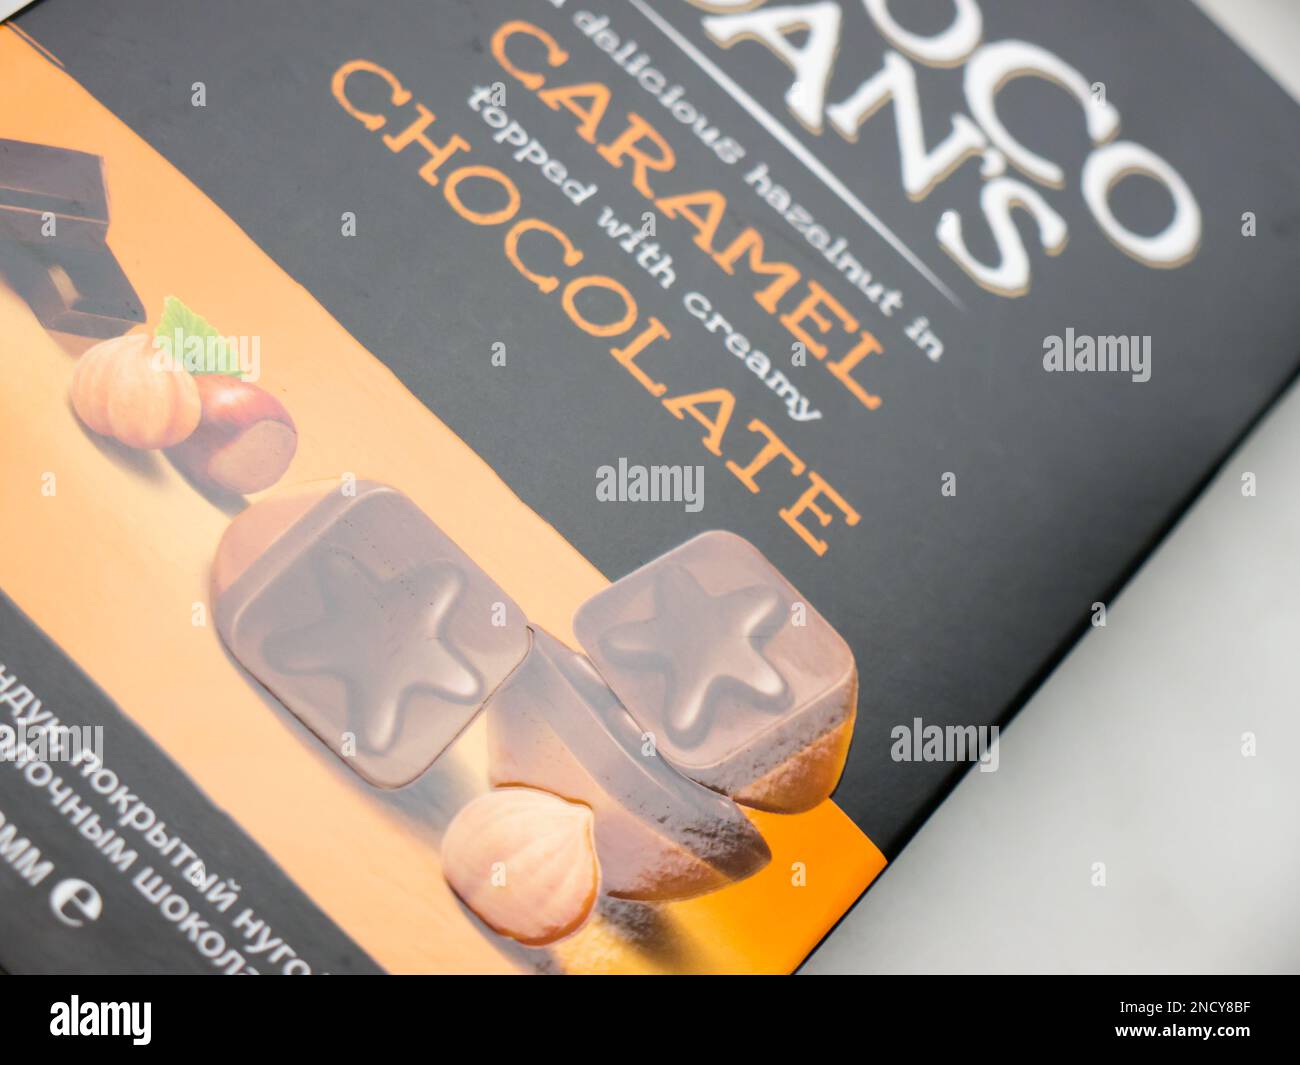 CHOCO DAN'S Chocolate candies. Stock Photo